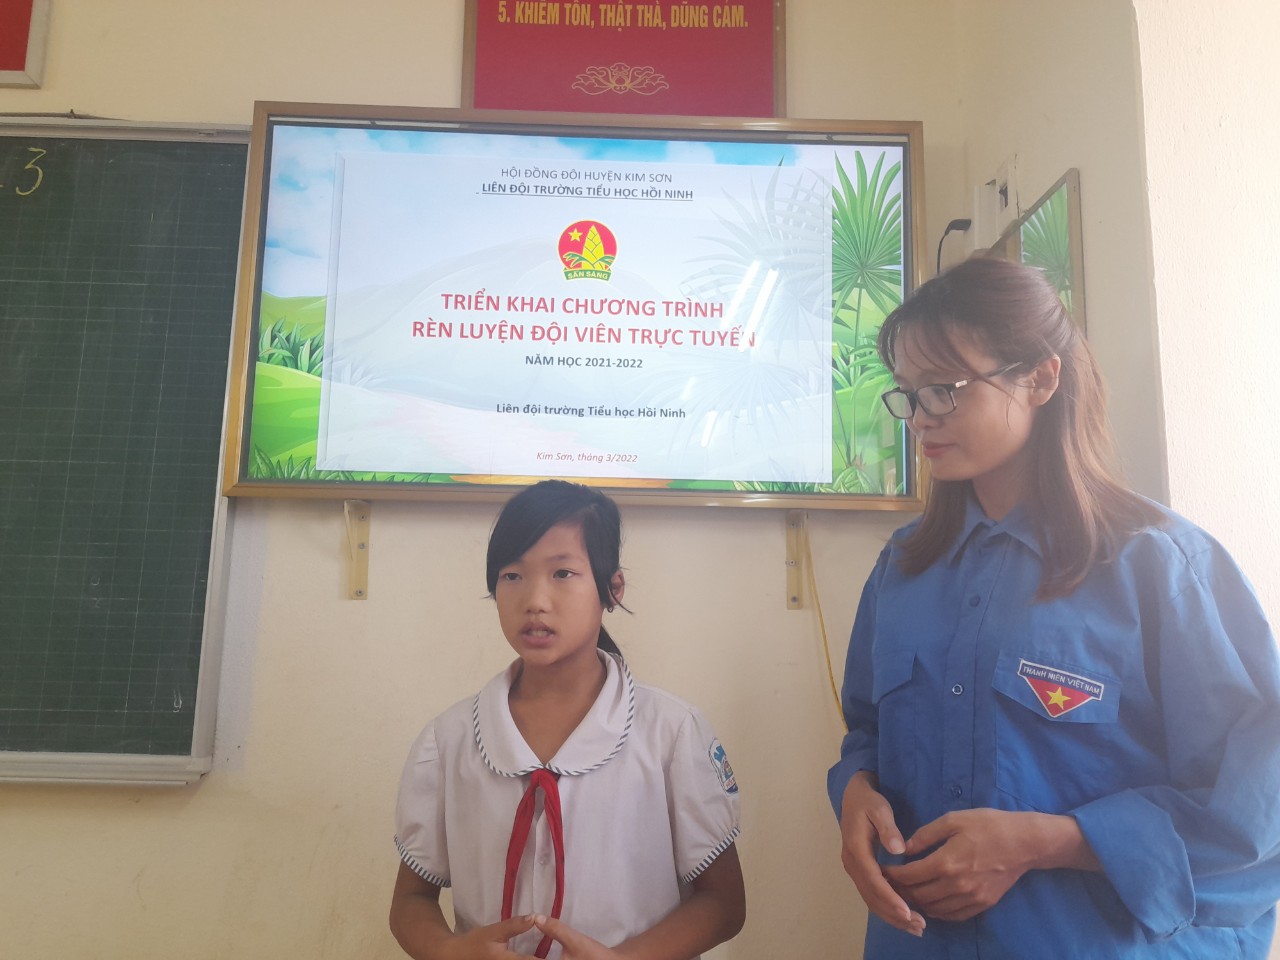 Liên đội trường Tiểu học Hồi Ninh triển khai rèn luyện đội viên trực truyến năm học 2021 – 2022